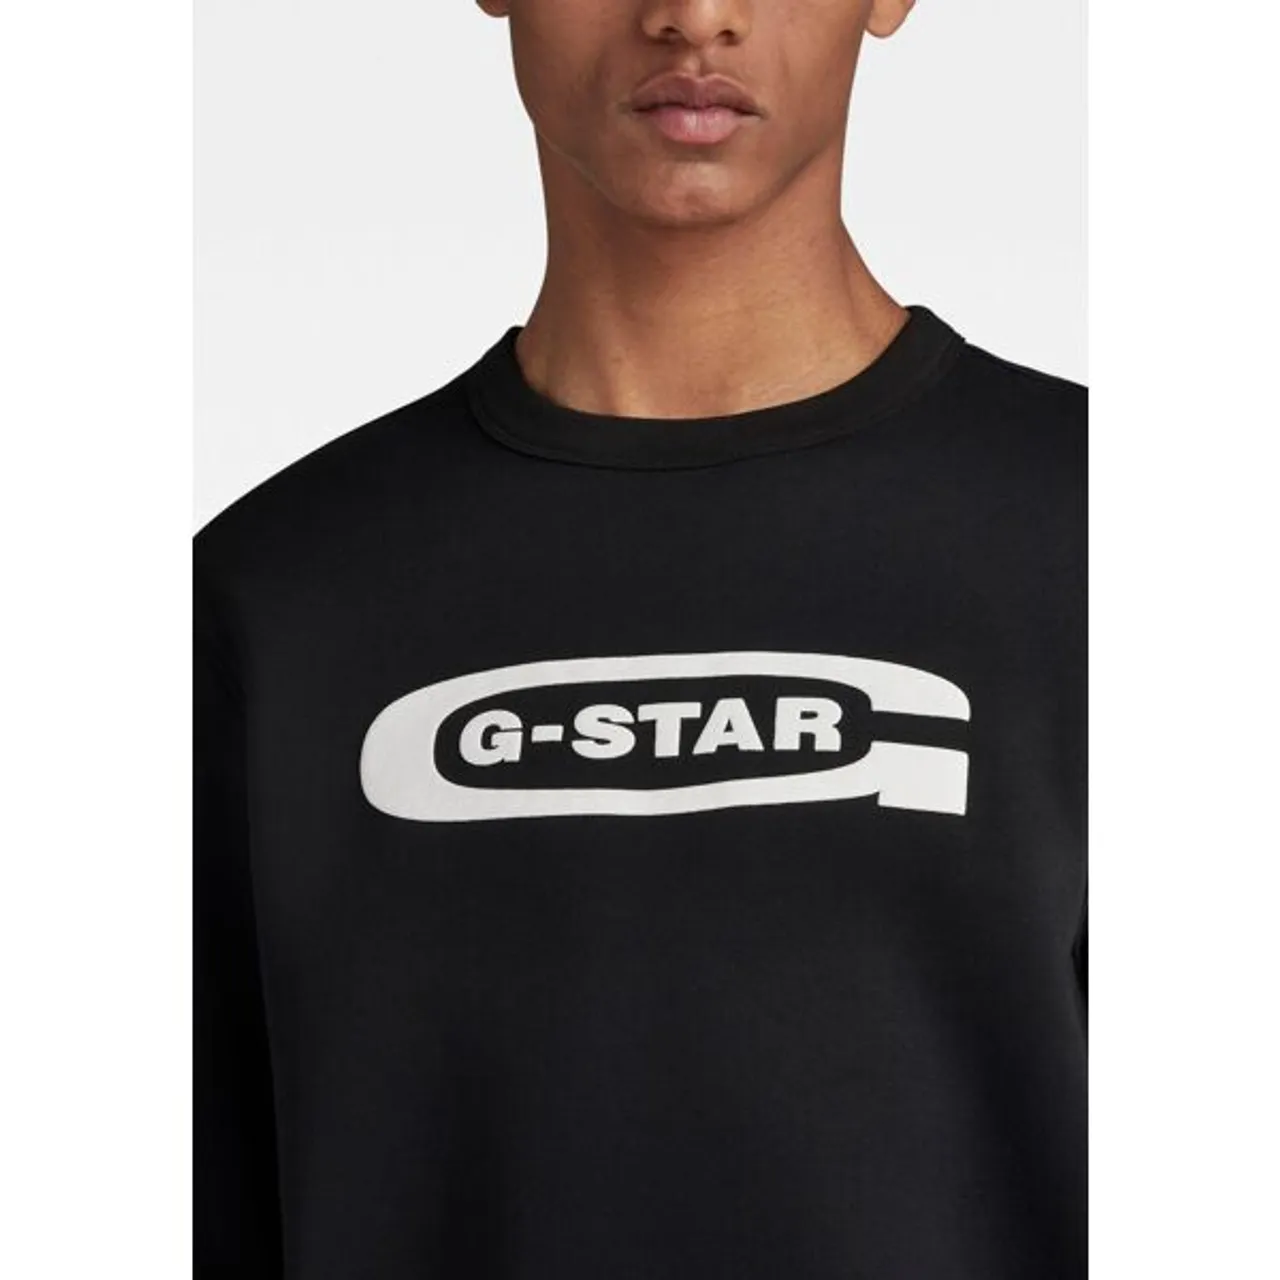 Sweatshirt G-STAR RAW "Old school logo r sw" Gr. M, schwarz (dk black) Herren Sweatshirts